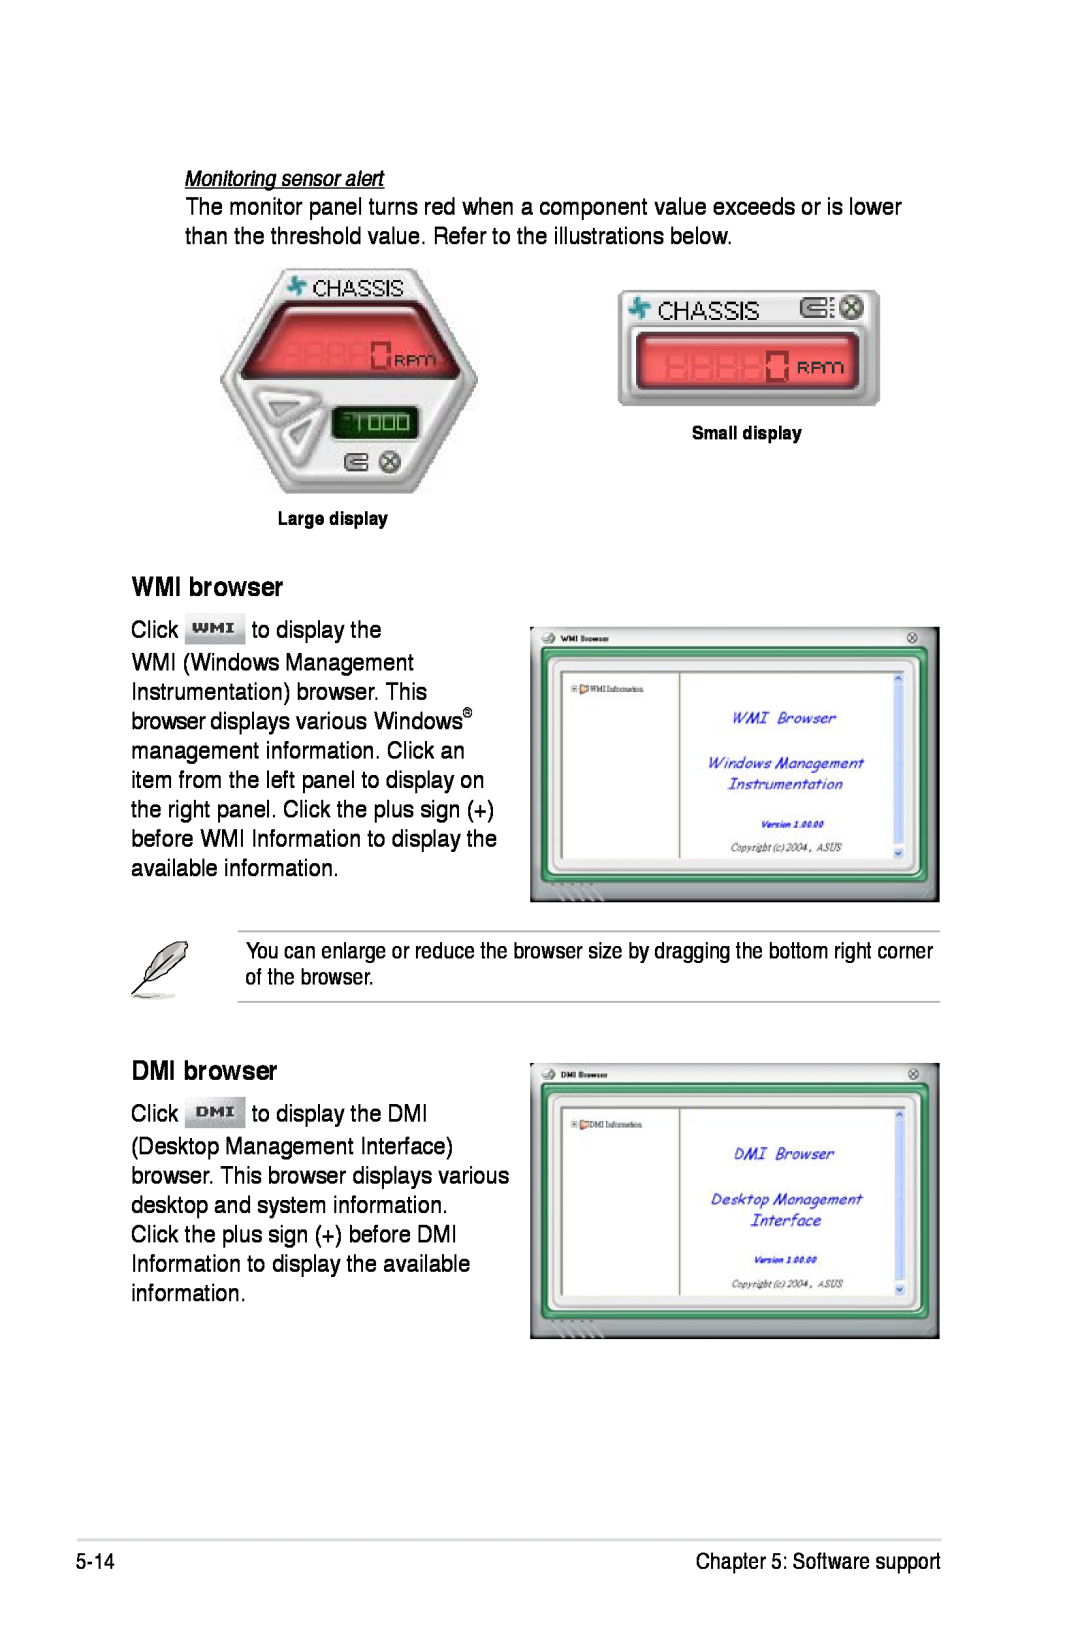 Asus P5K/EPU manual WMI browser, DMI browser, Monitoring sensor alert 